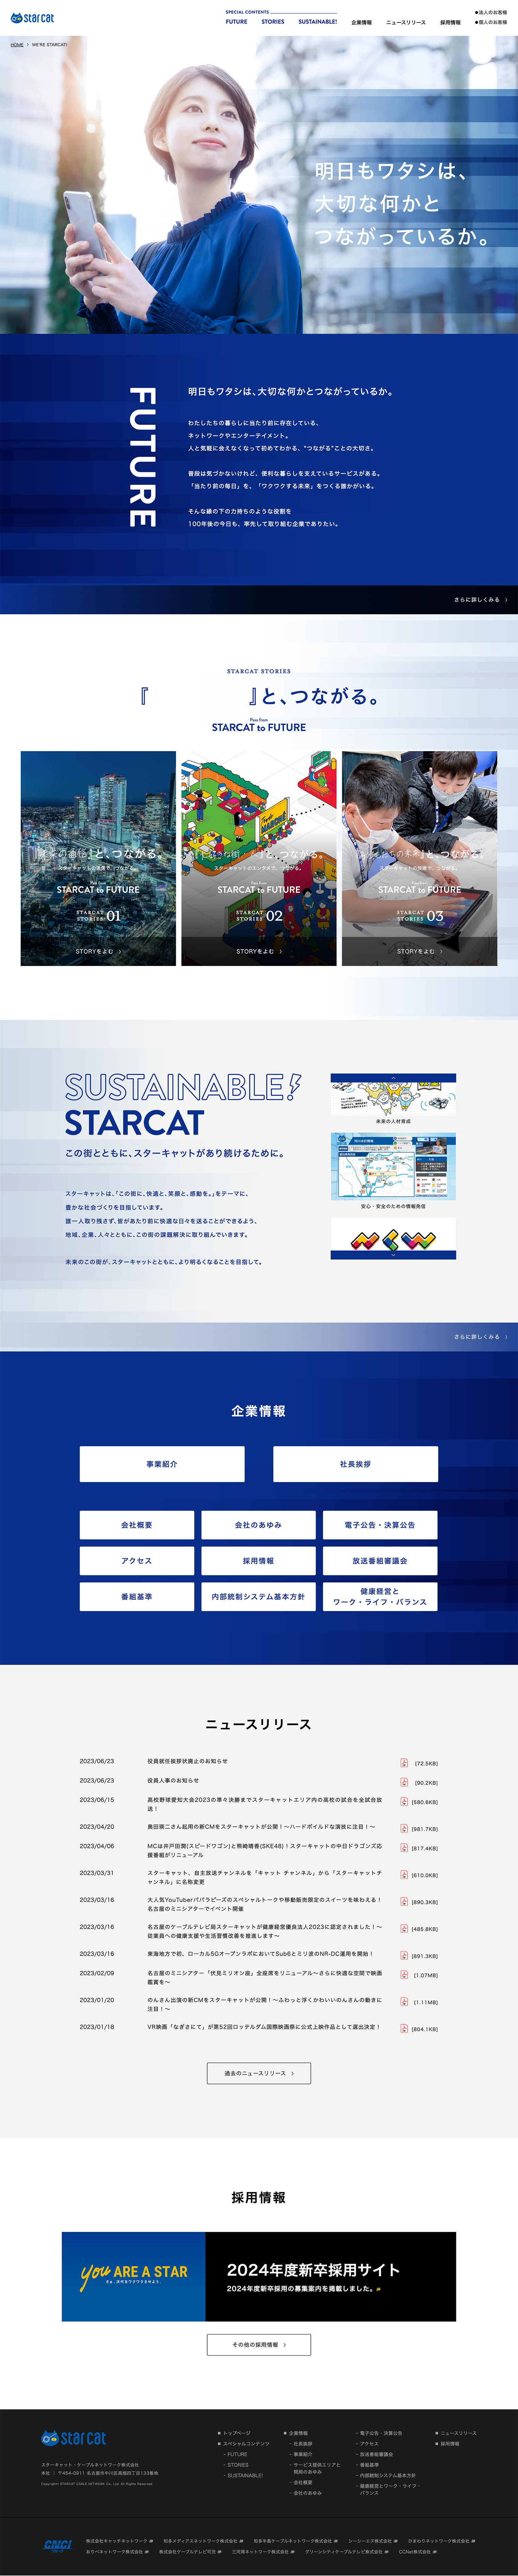 スターキャット 企業情報Webサイト デザイン・構築